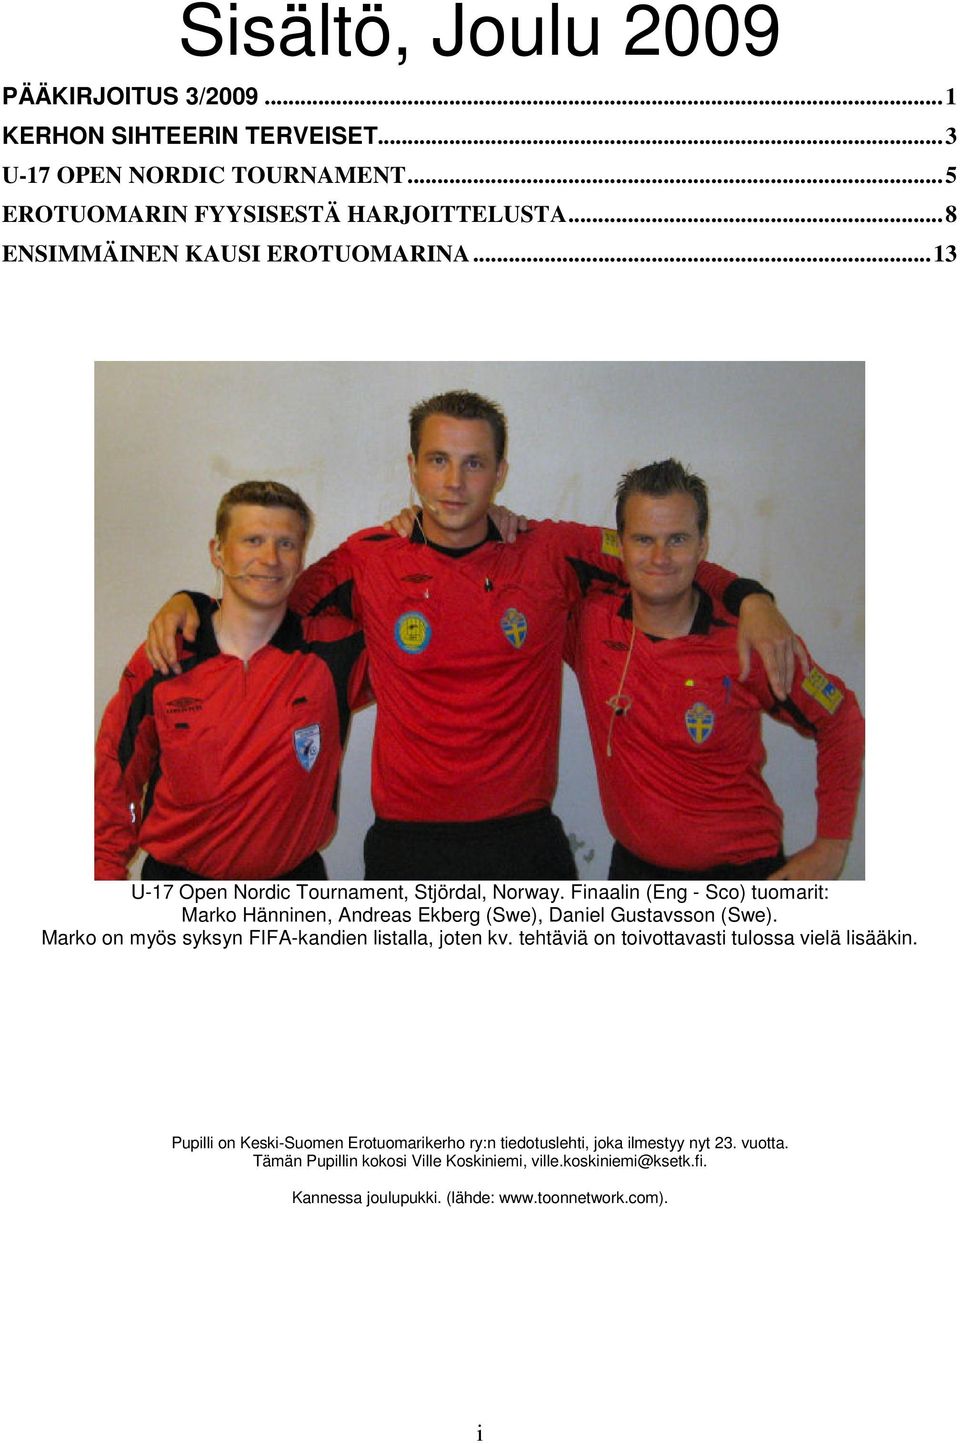 Finaalin (Eng - Sco) tuomarit: Marko Hänninen, Andreas Ekberg (Swe), Daniel Gustavsson (Swe). Marko on myös syksyn FIFA-kandien listalla, joten kv.